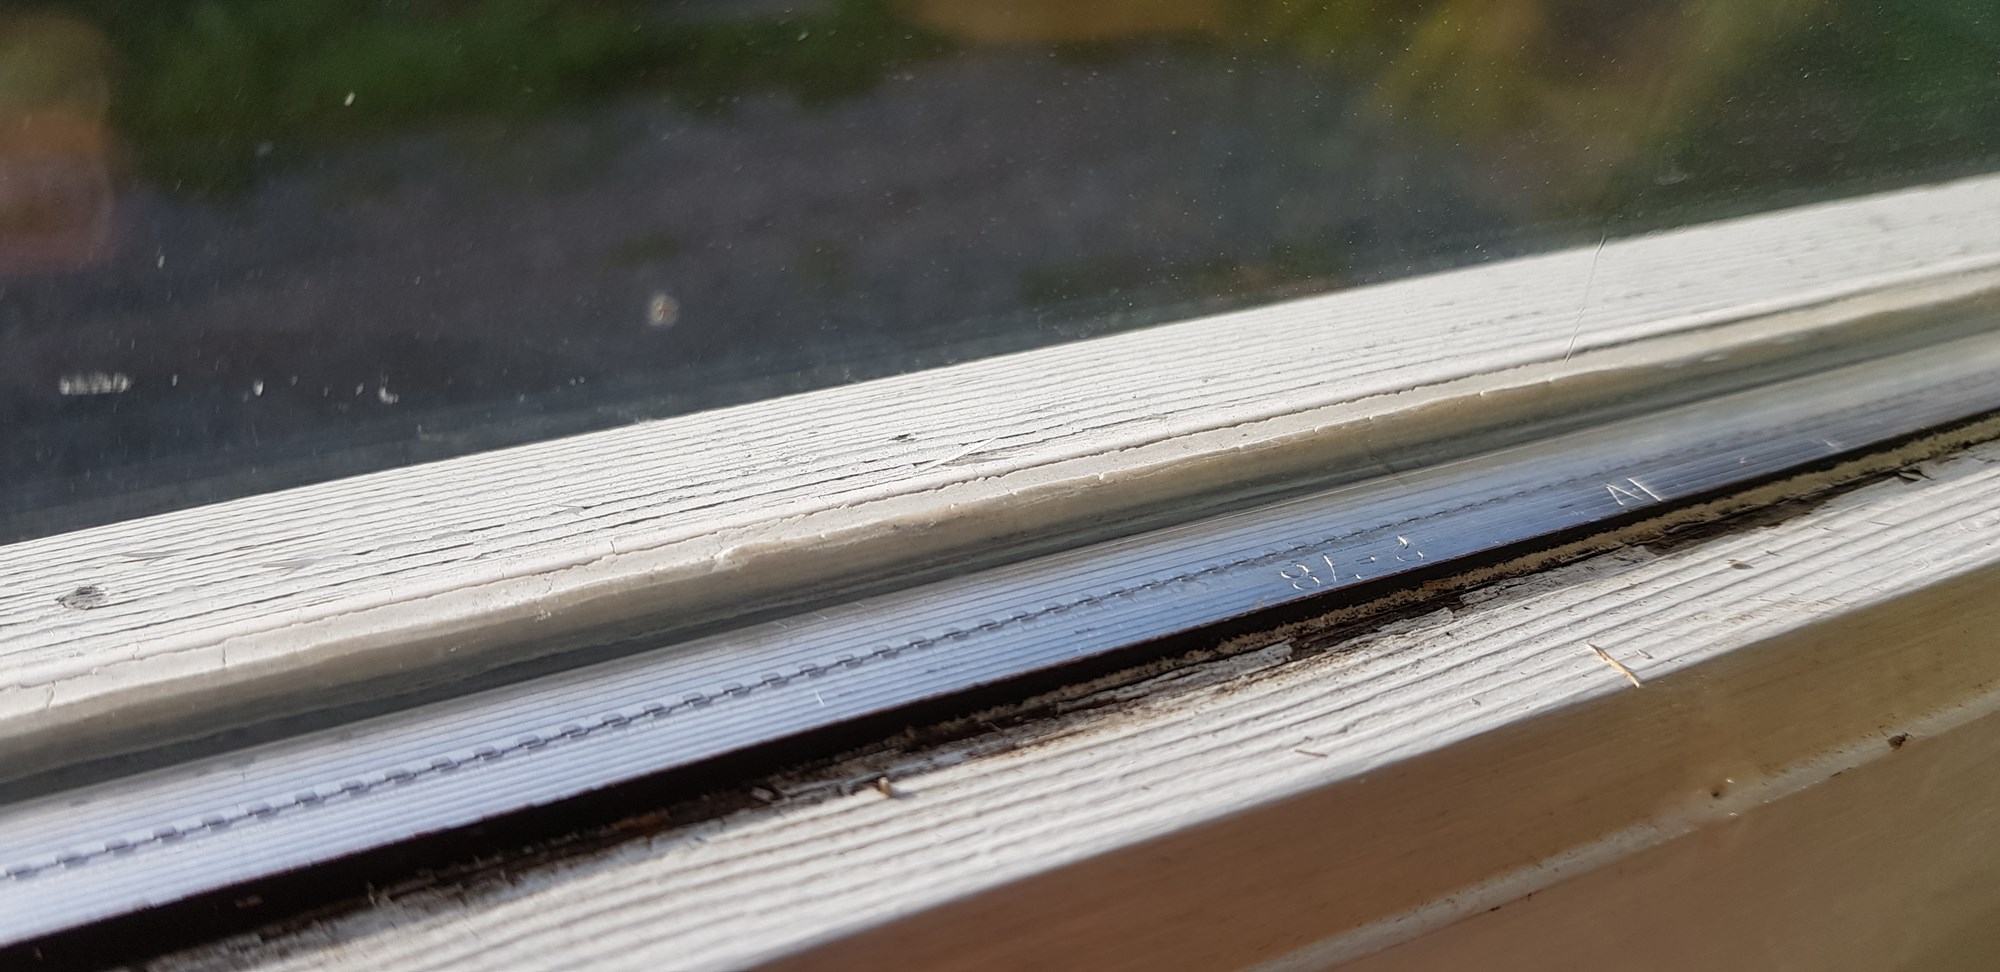 Er dette vinduskitt med asbest i? - 20190801_072457.jpg - Emmylou91